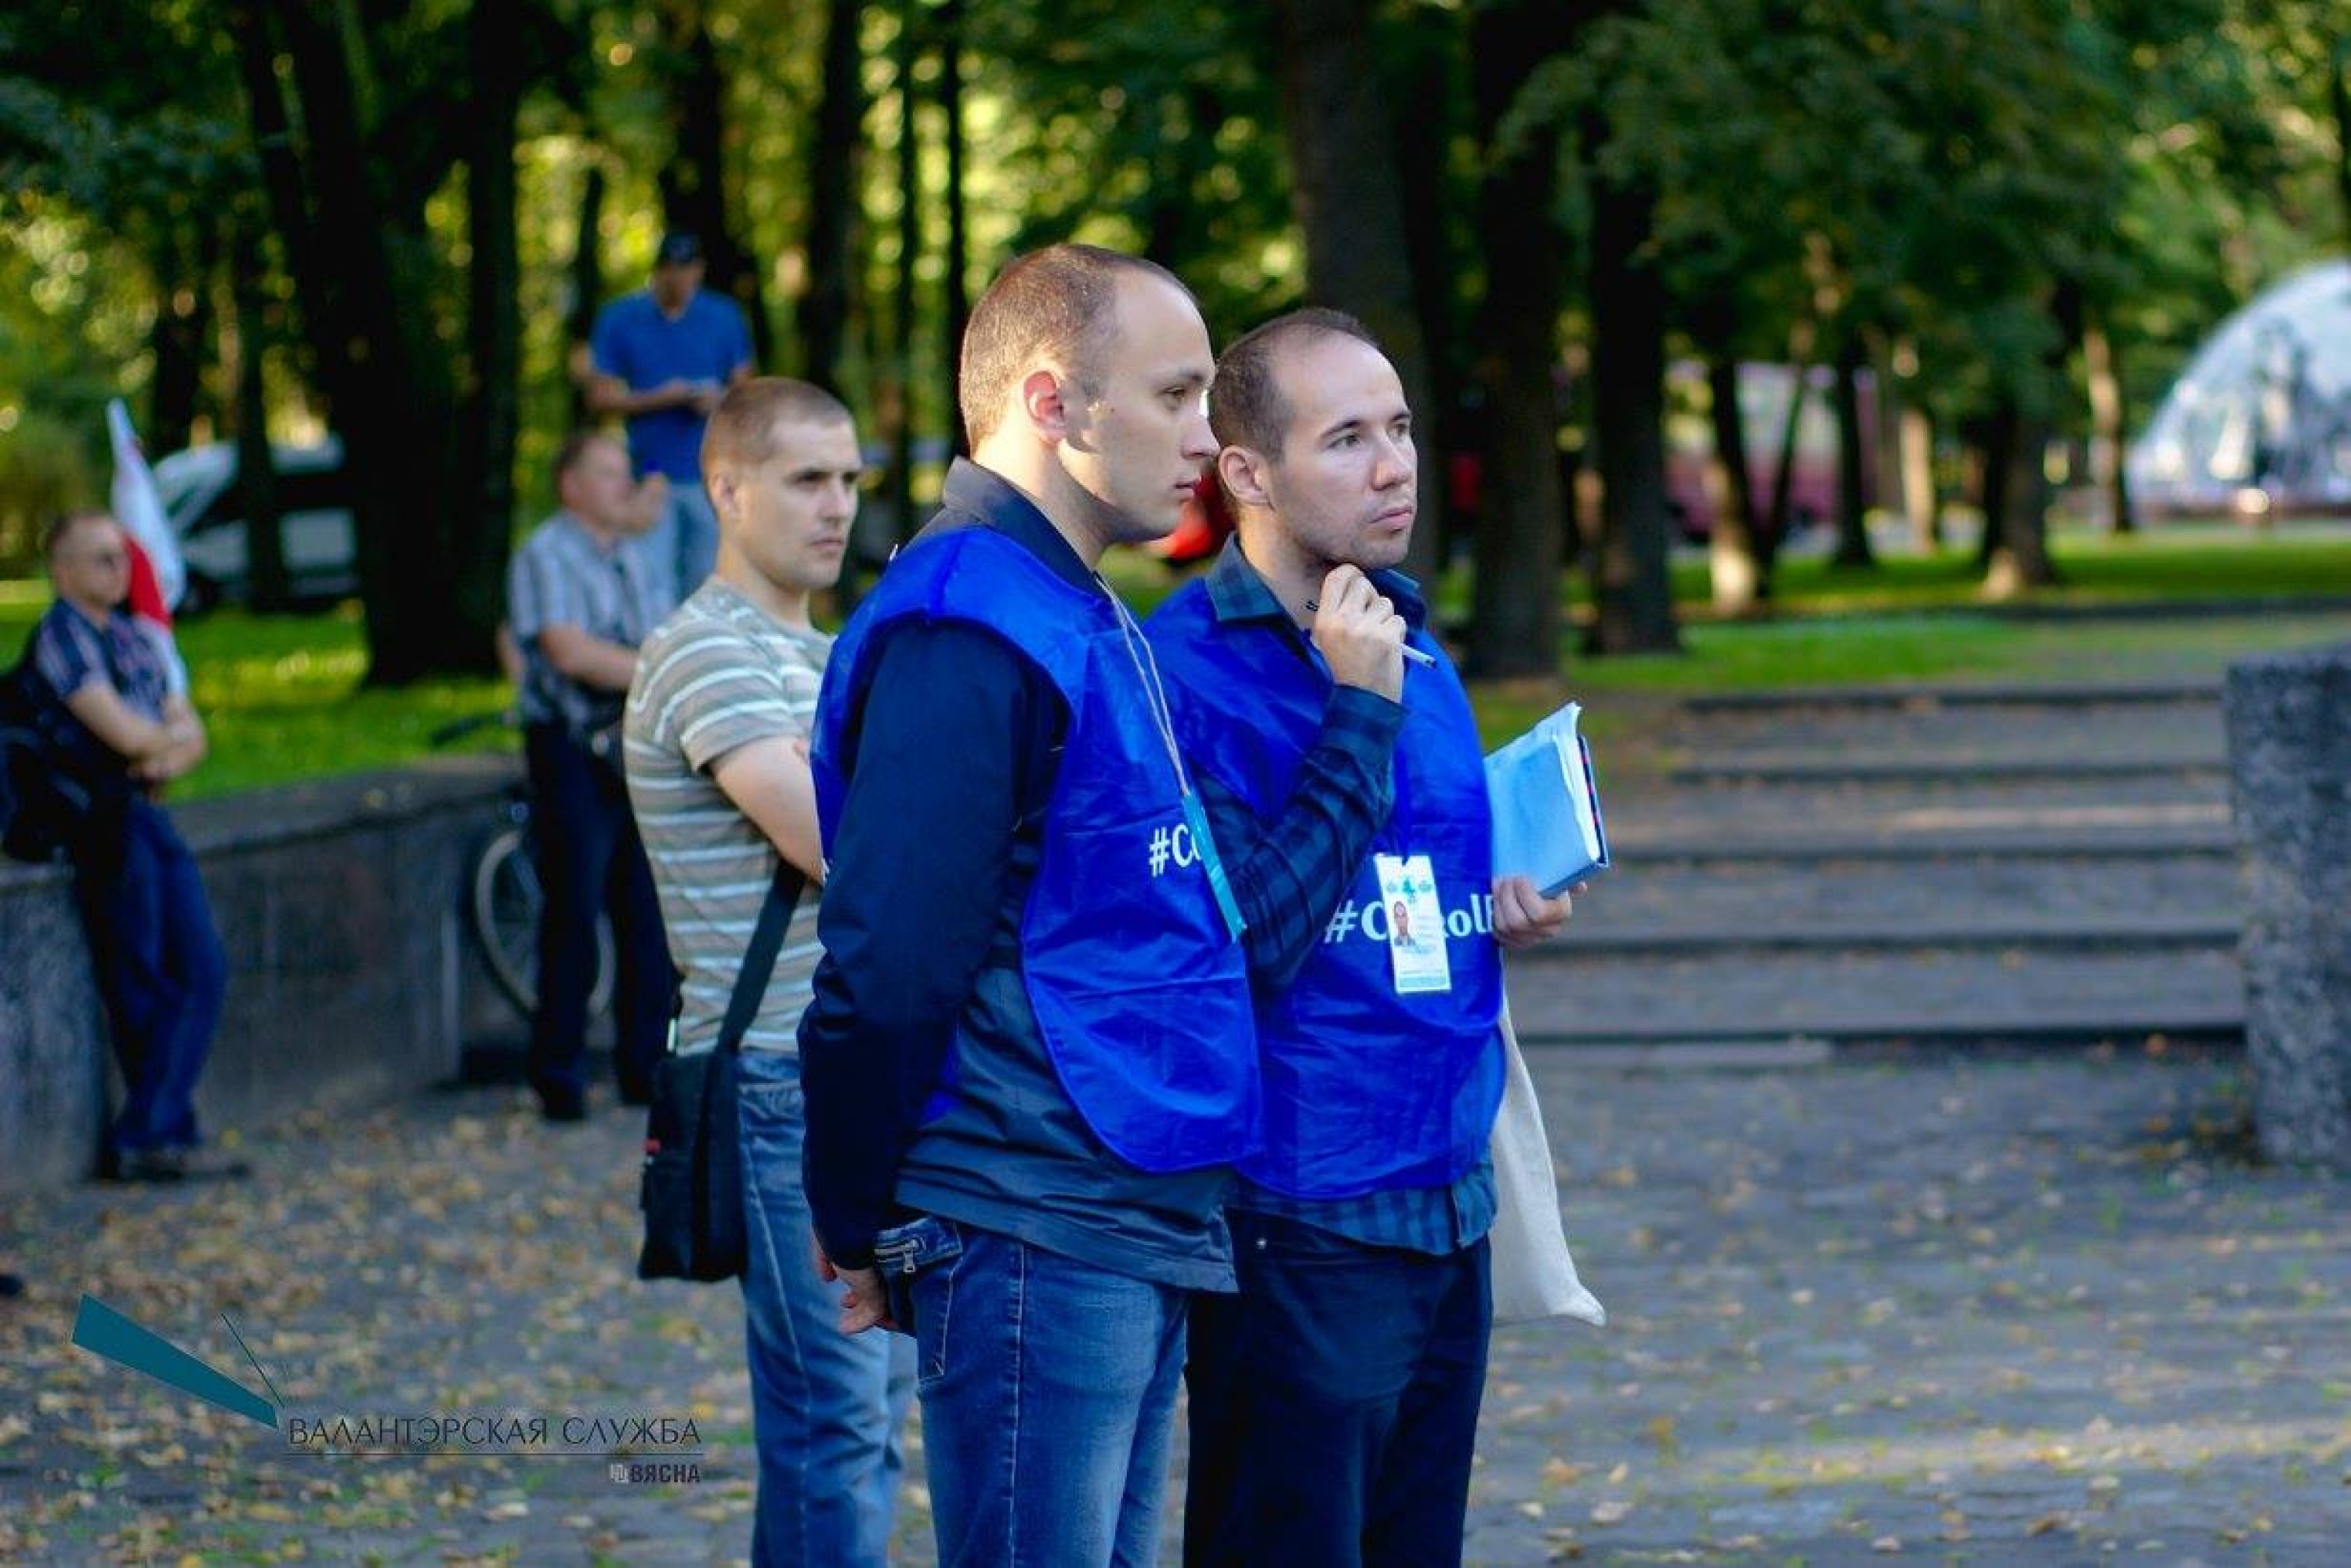 Viasna observers, Aliaksei Loika on the left